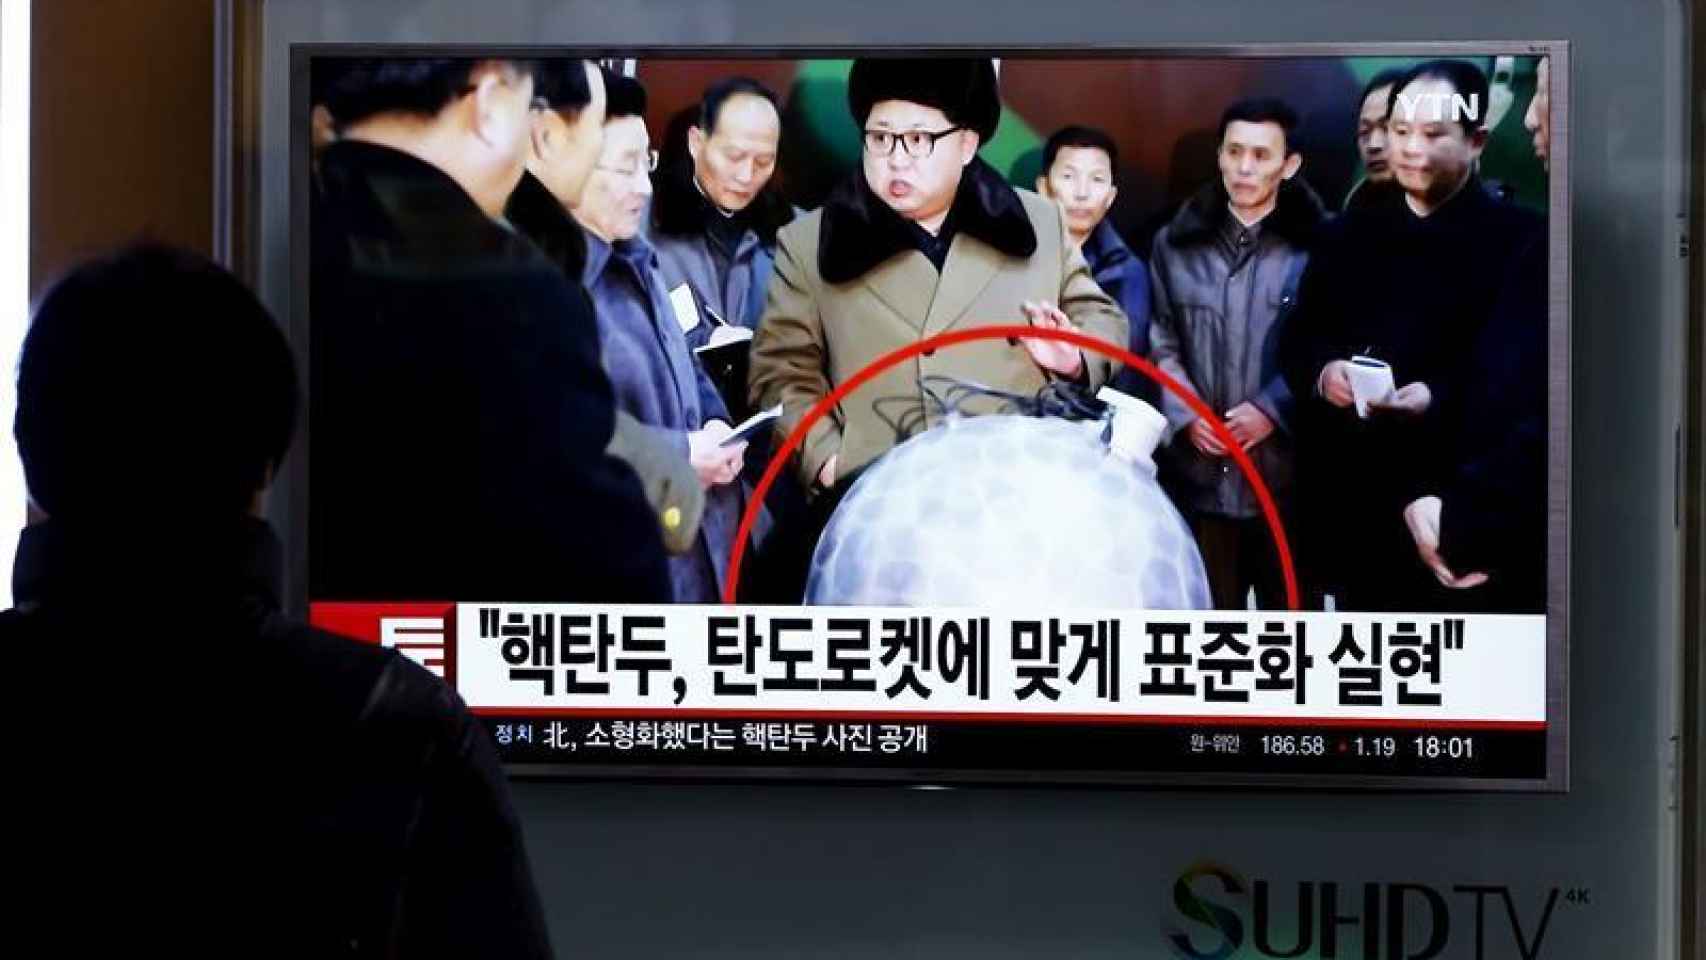 Corea del Norte ha anunciado este miércoles que ha logrado miniaturizar cabezas nucleares para instalarlas en misiles junto a esta foto de Kim Jong Un con una réplica de una ojiva nuclear miniaturizada.